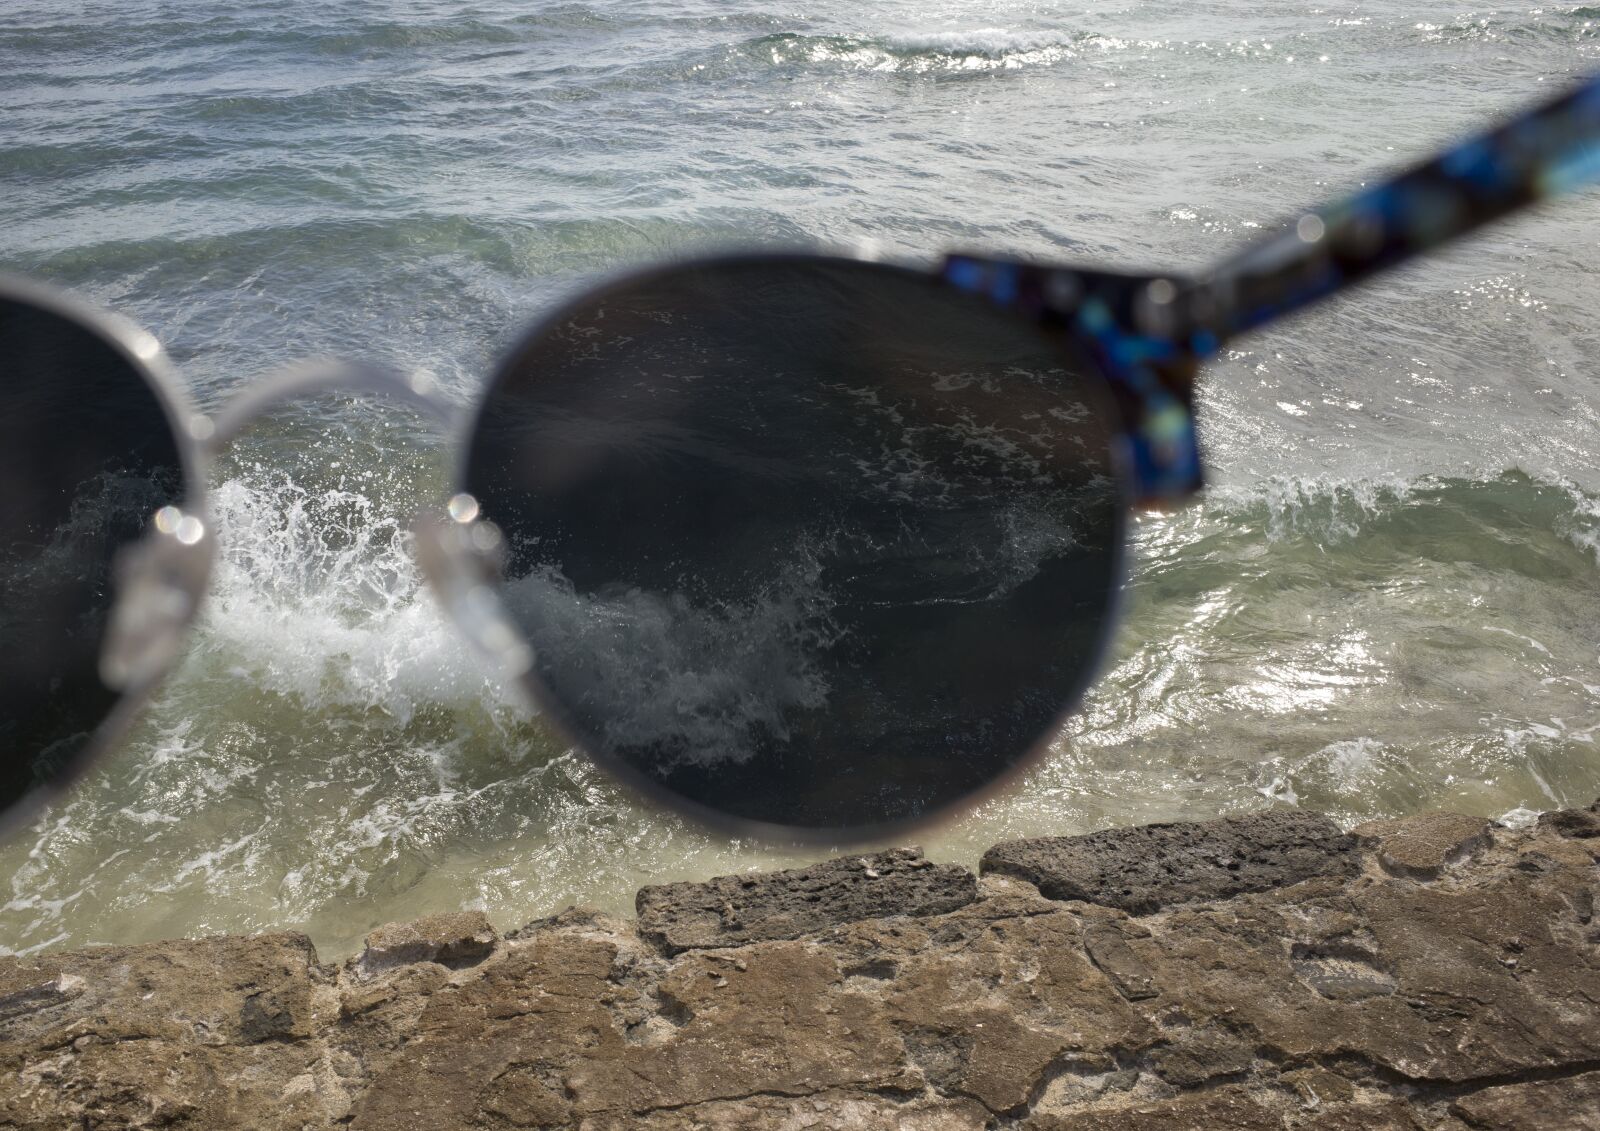 GR Lens sample photo. Sunglasses, sea, beach photography